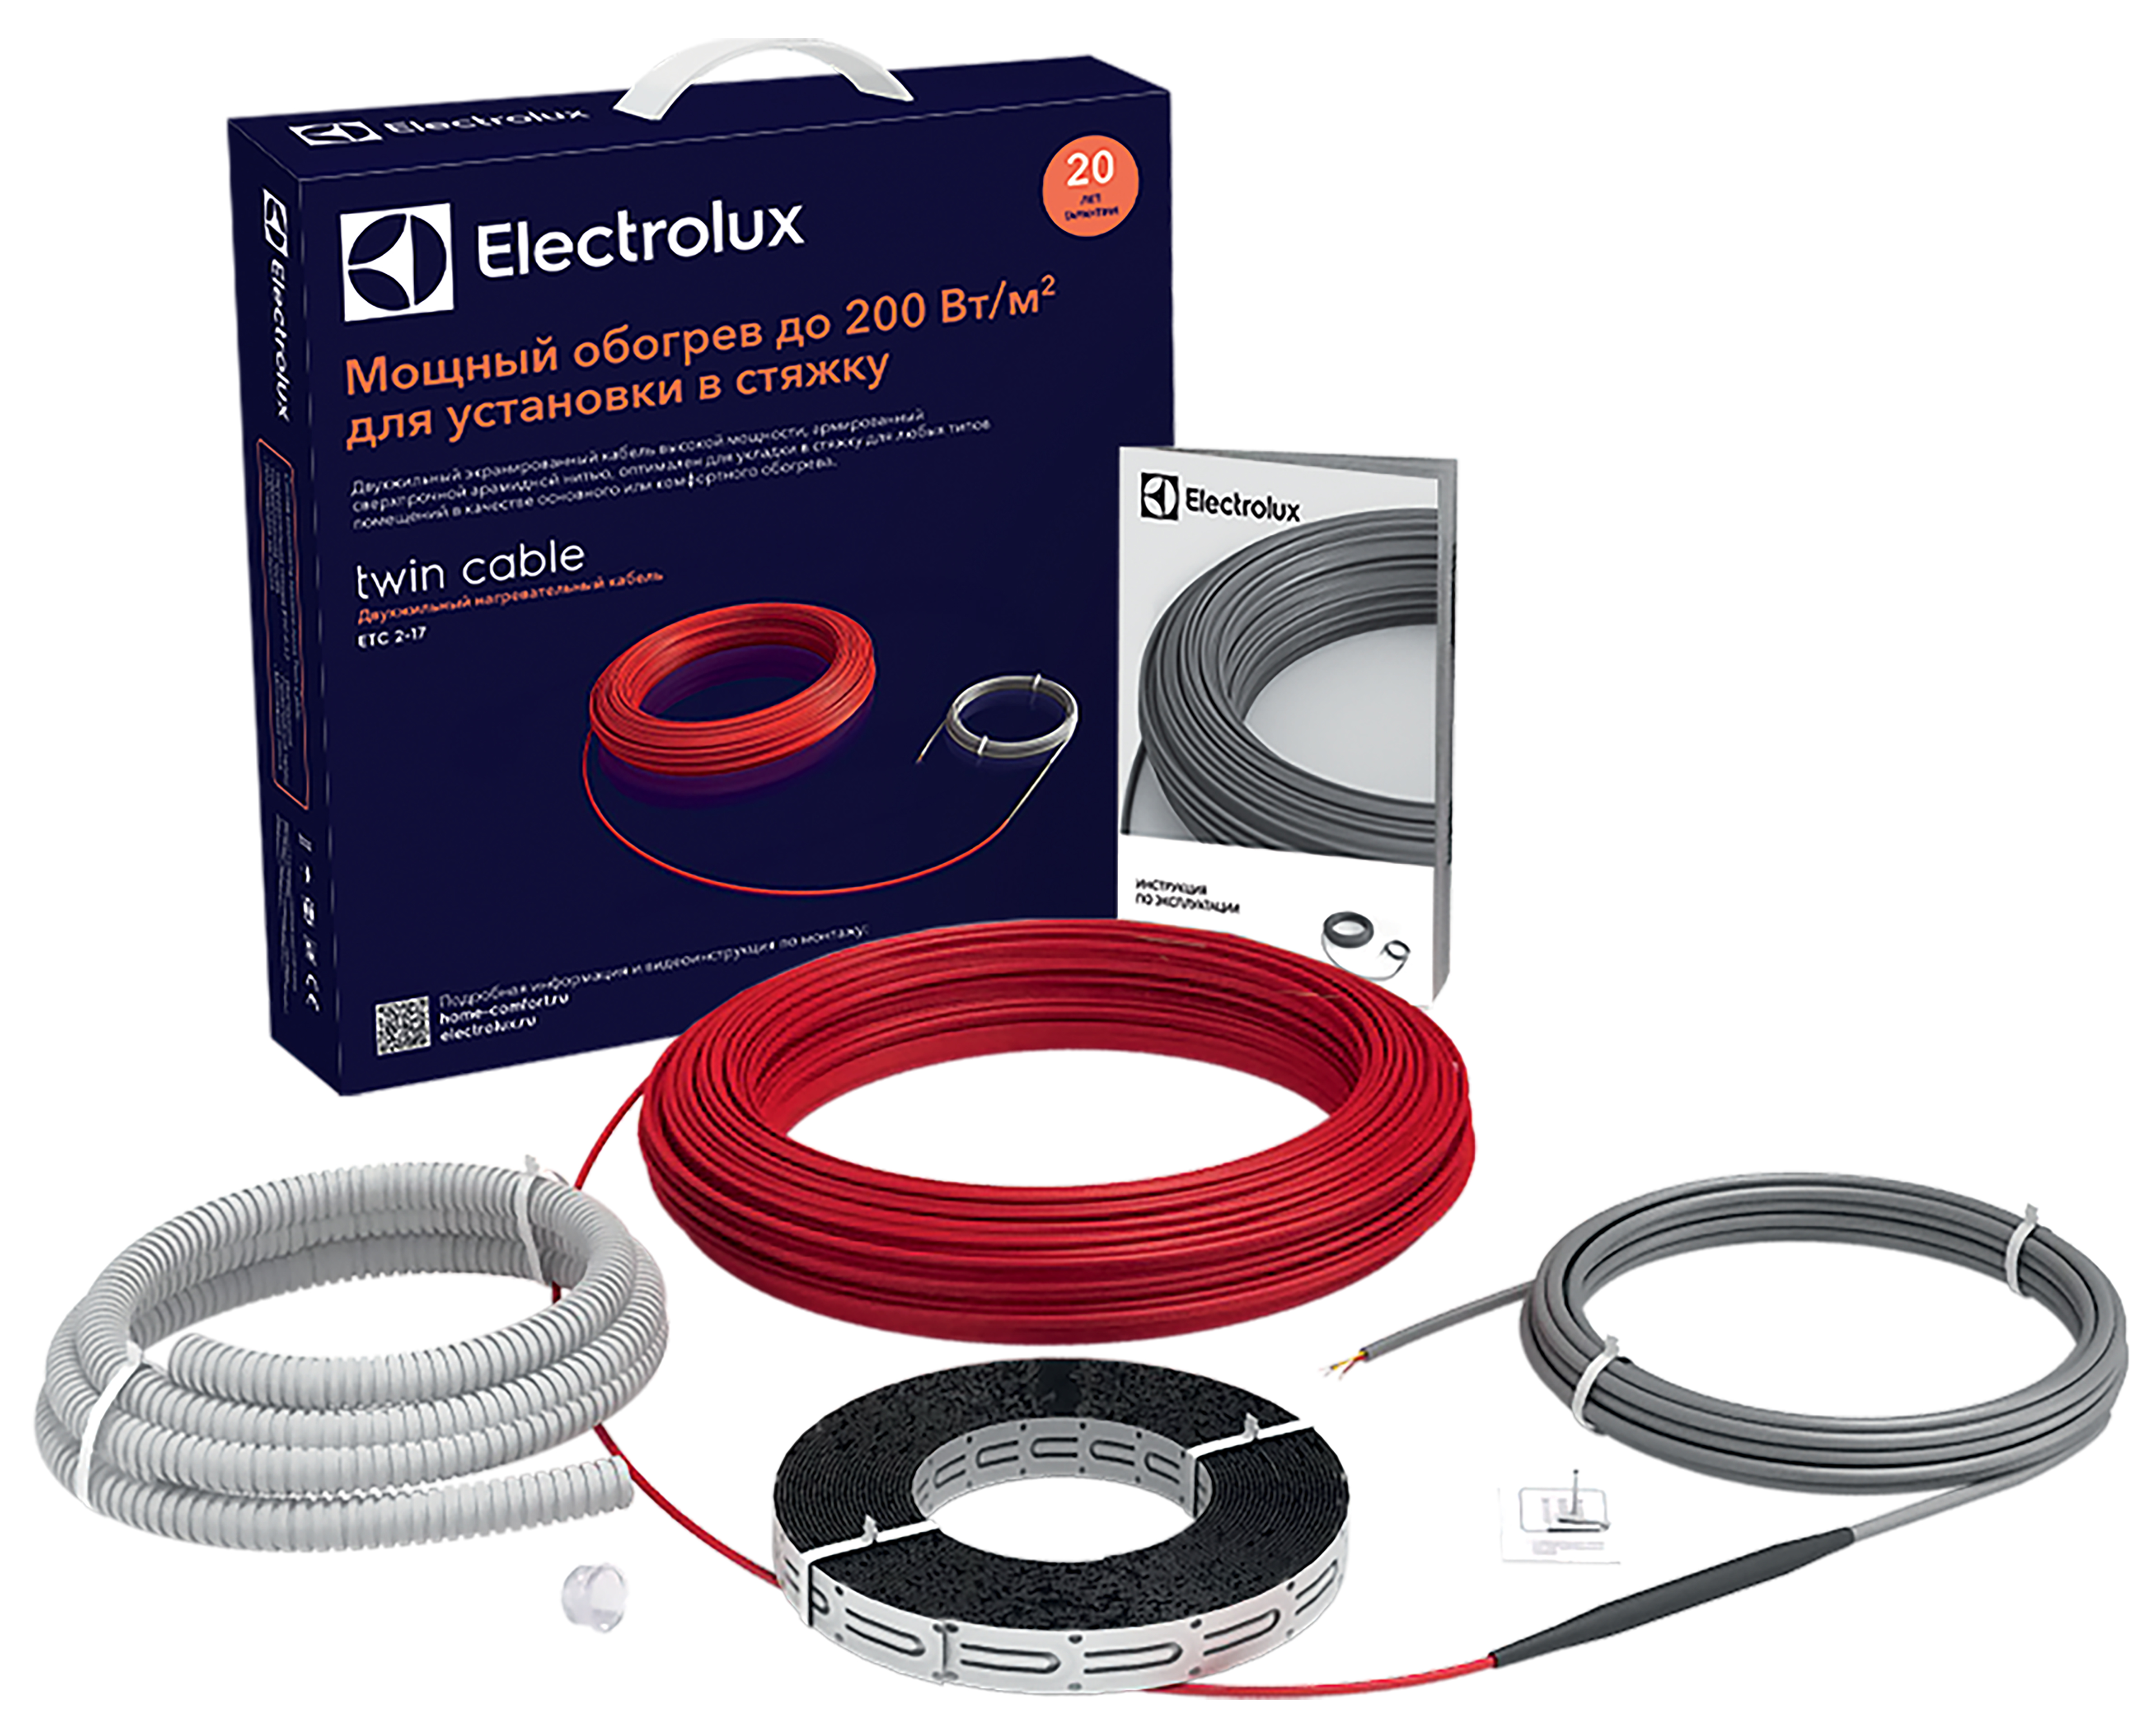 Теплый пол Electrolux под линолеум Electrolux Twin Cable ETC 2-17-800